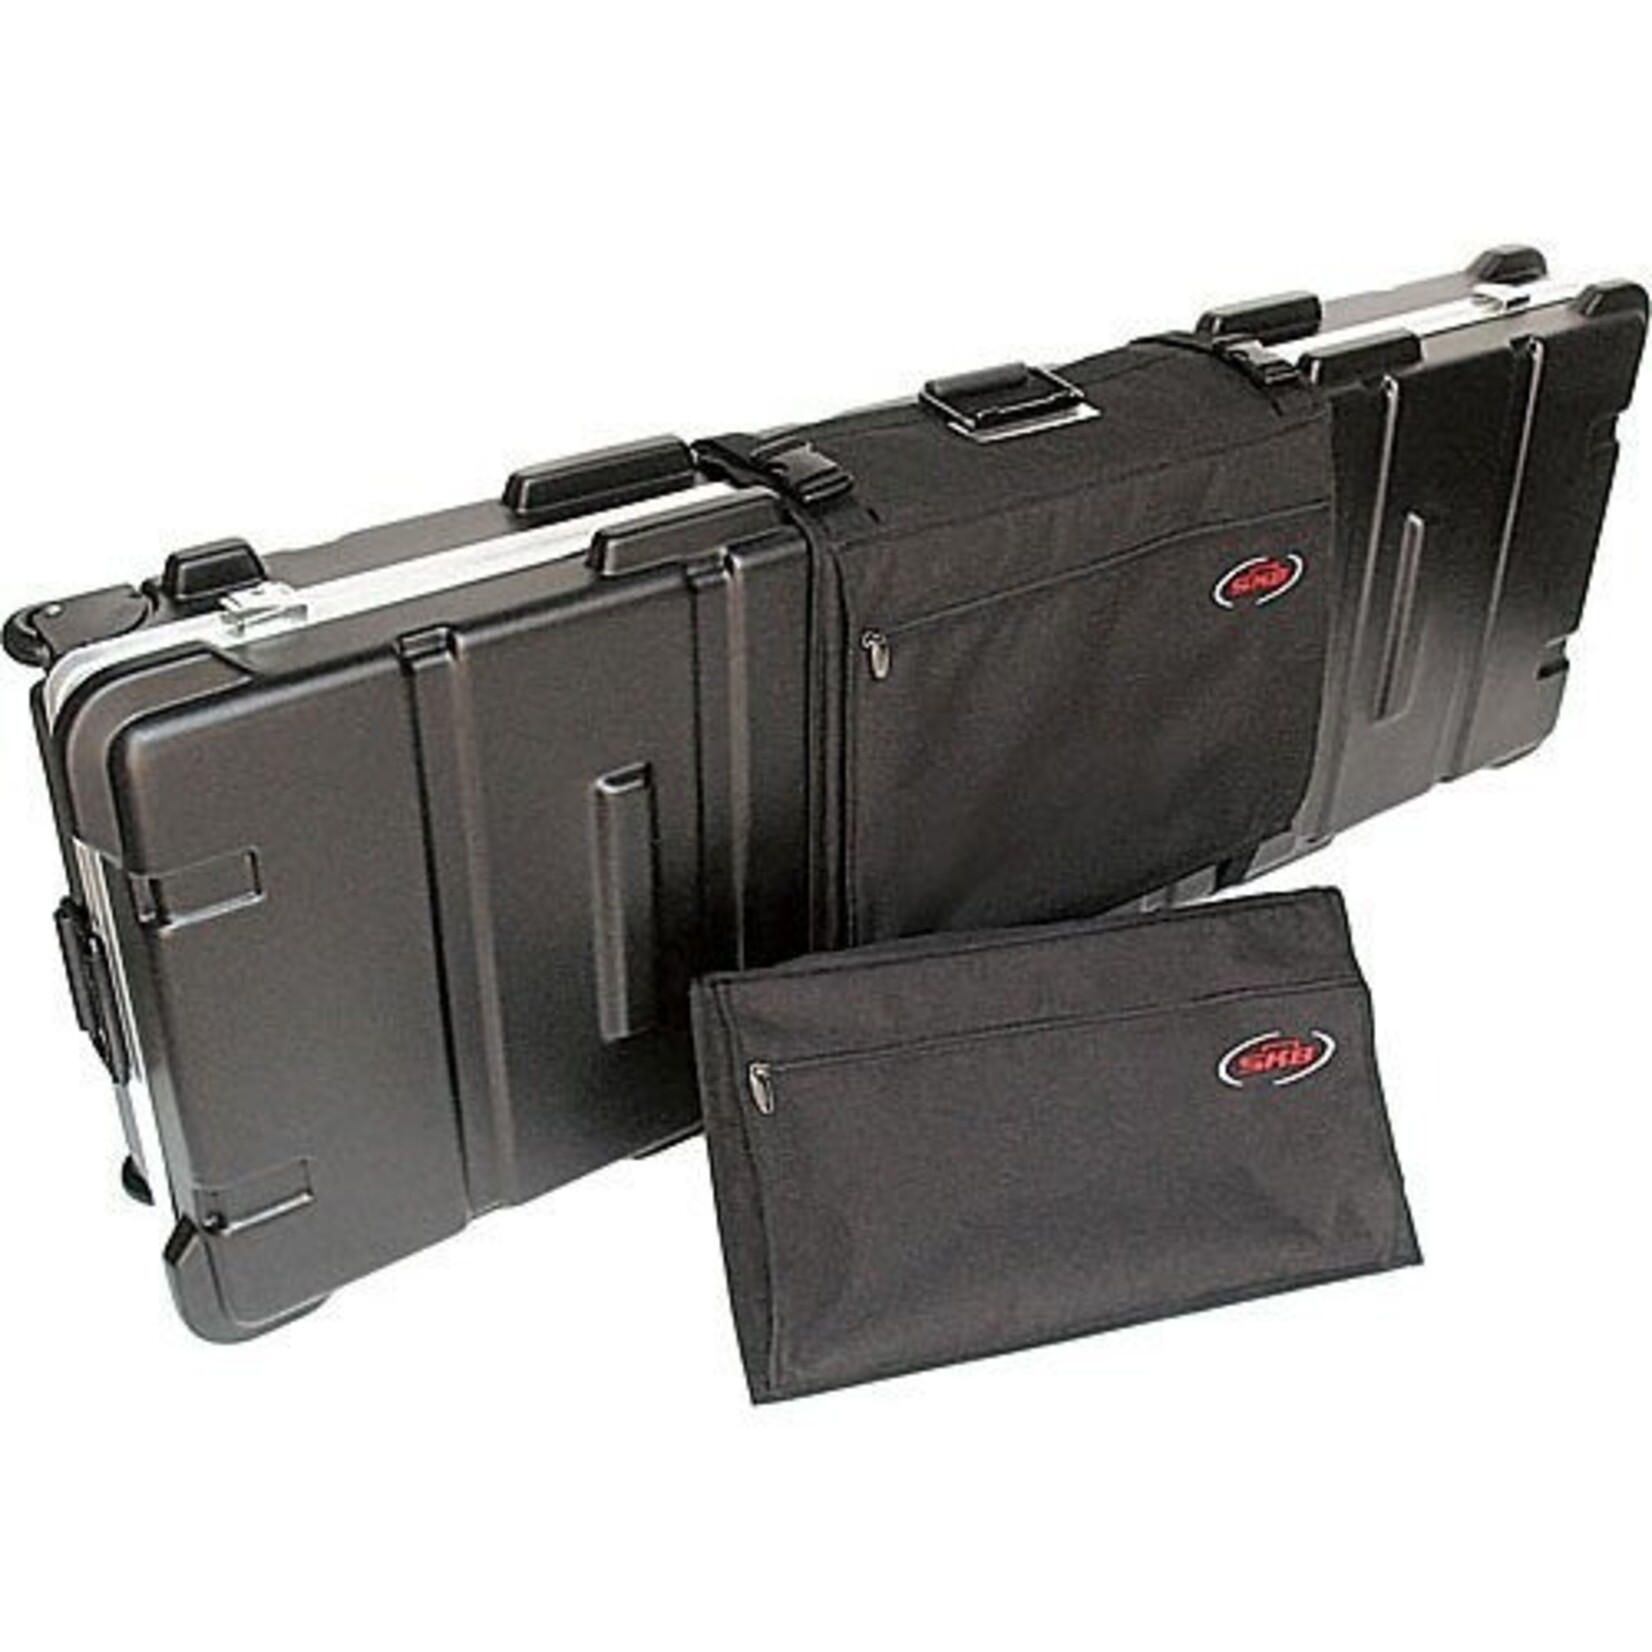 SKB Cases SK-2 Sidekick Exterior Accessory Bag for Rectangular Guitar Cases